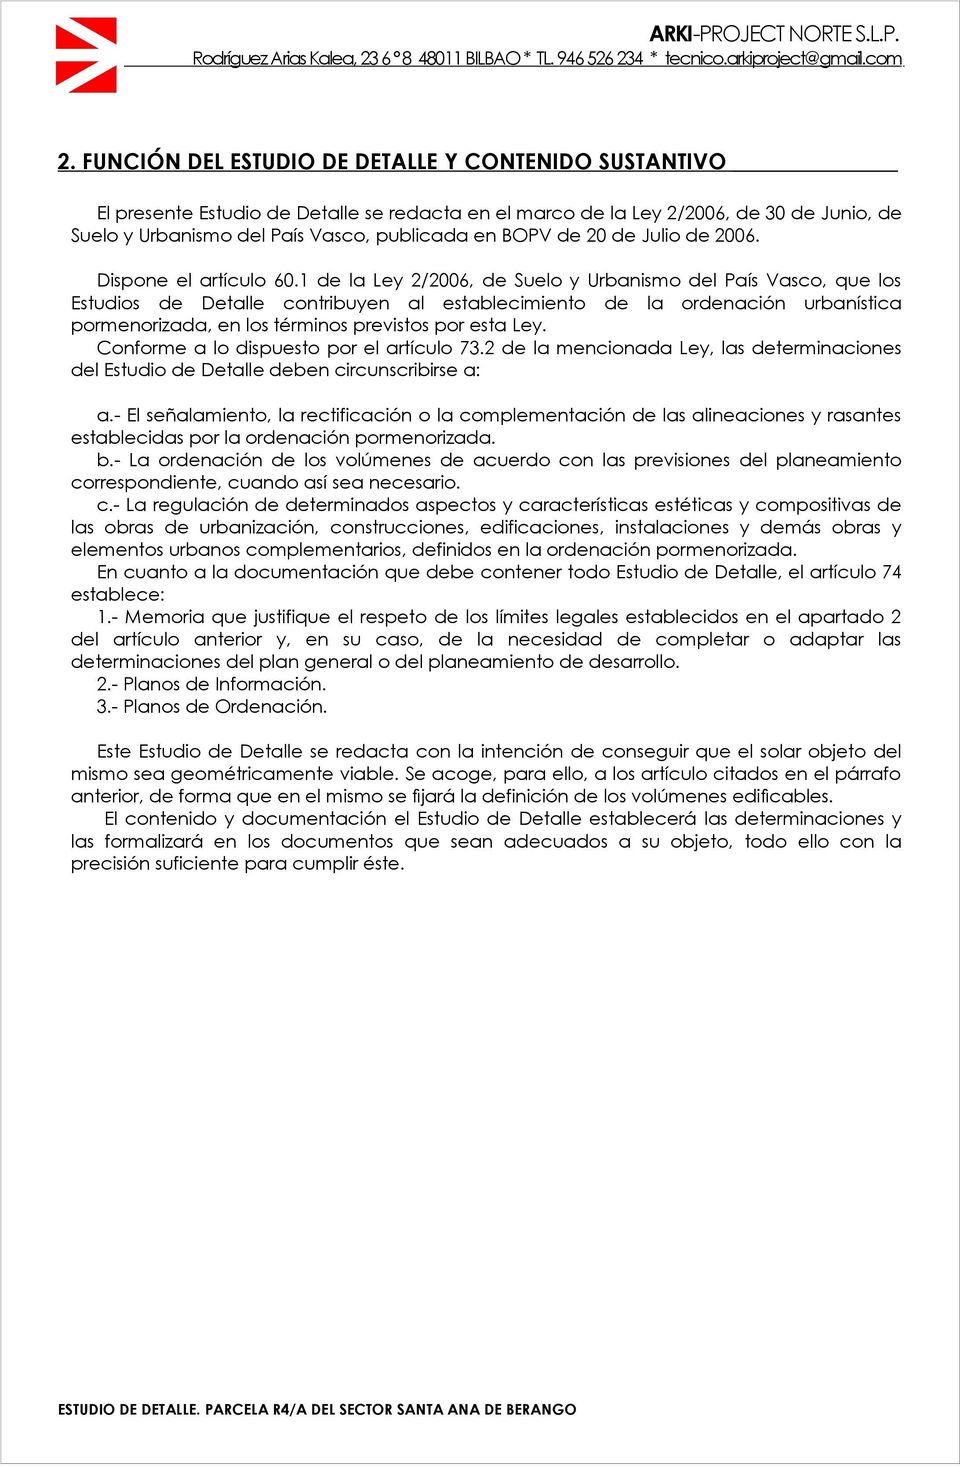 1 de la Ley 2/2006, de Suelo y Urbanismo del País Vasco, que los Estudios de Detalle contribuyen al establecimiento de la ordenación urbanística pormenorizada, en los términos previstos por esta Ley.